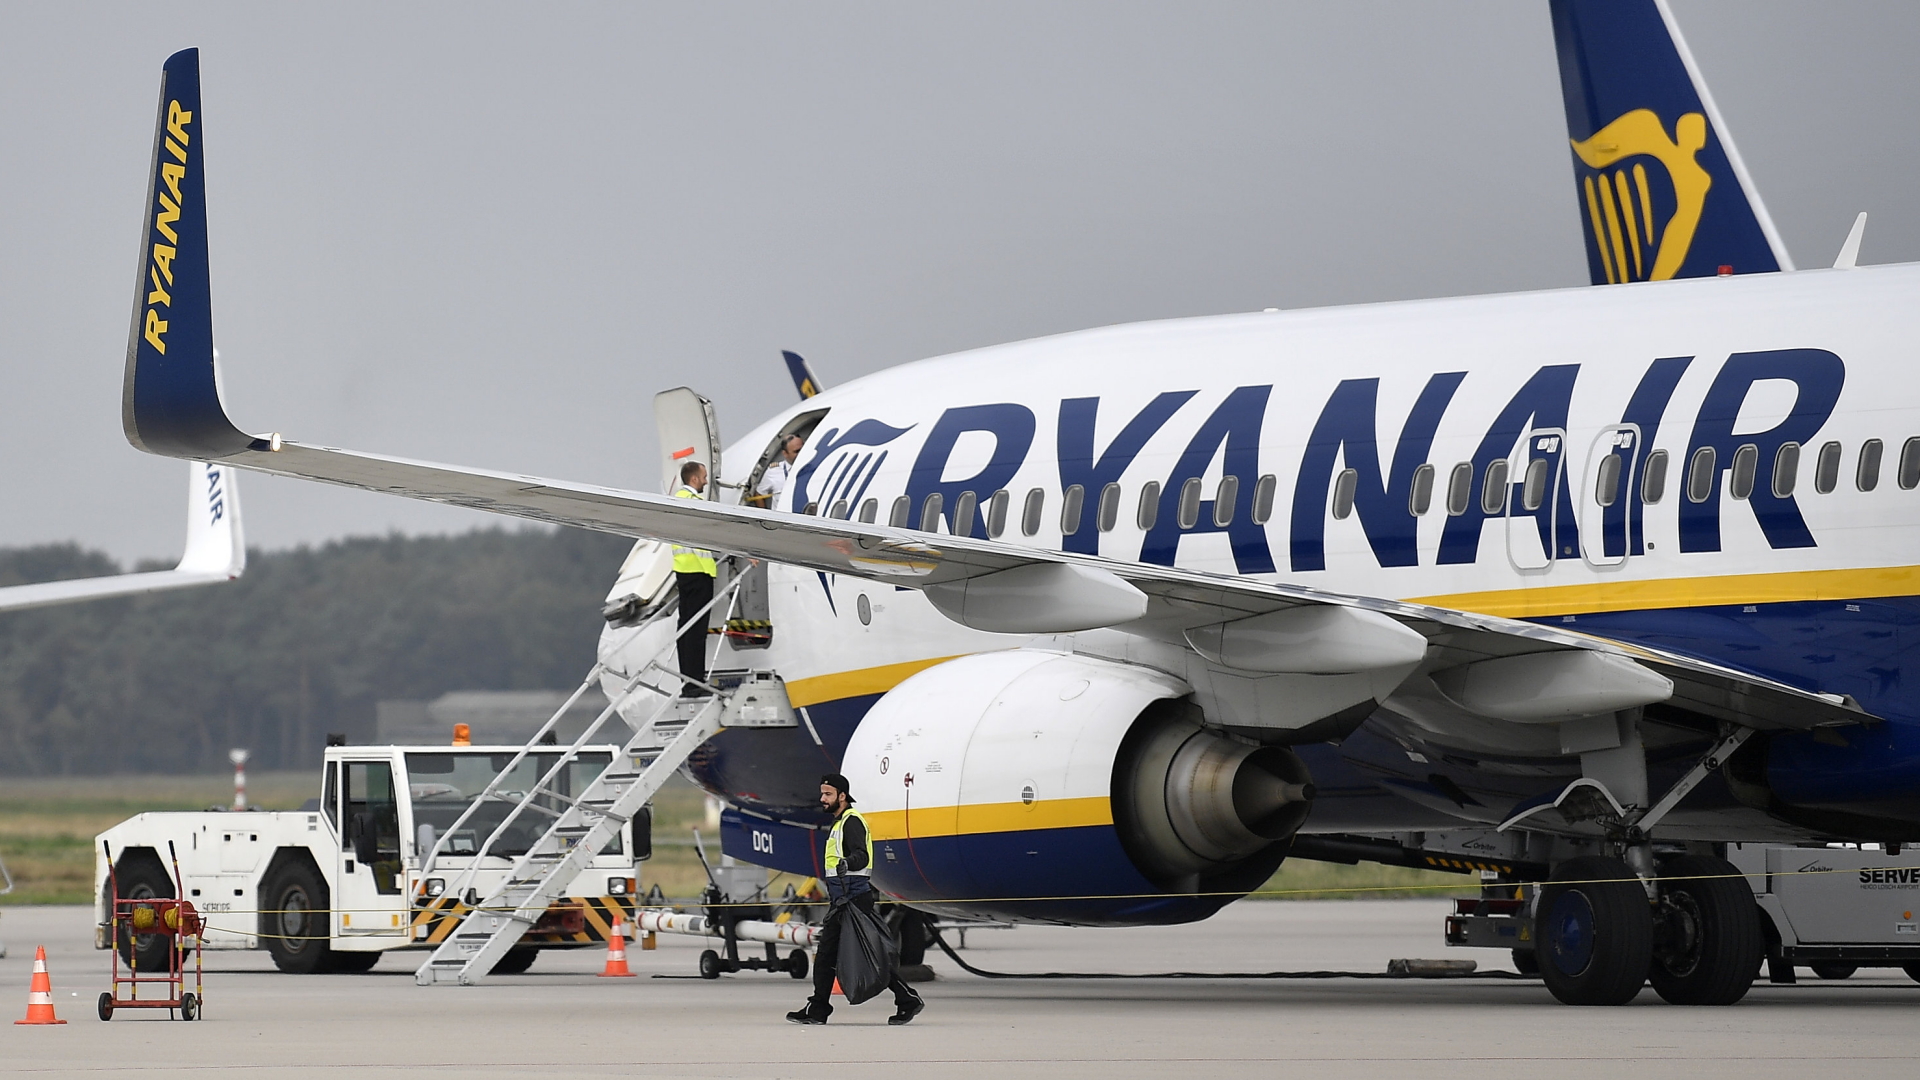 Billigflieger Ryanair schreibt Verlust